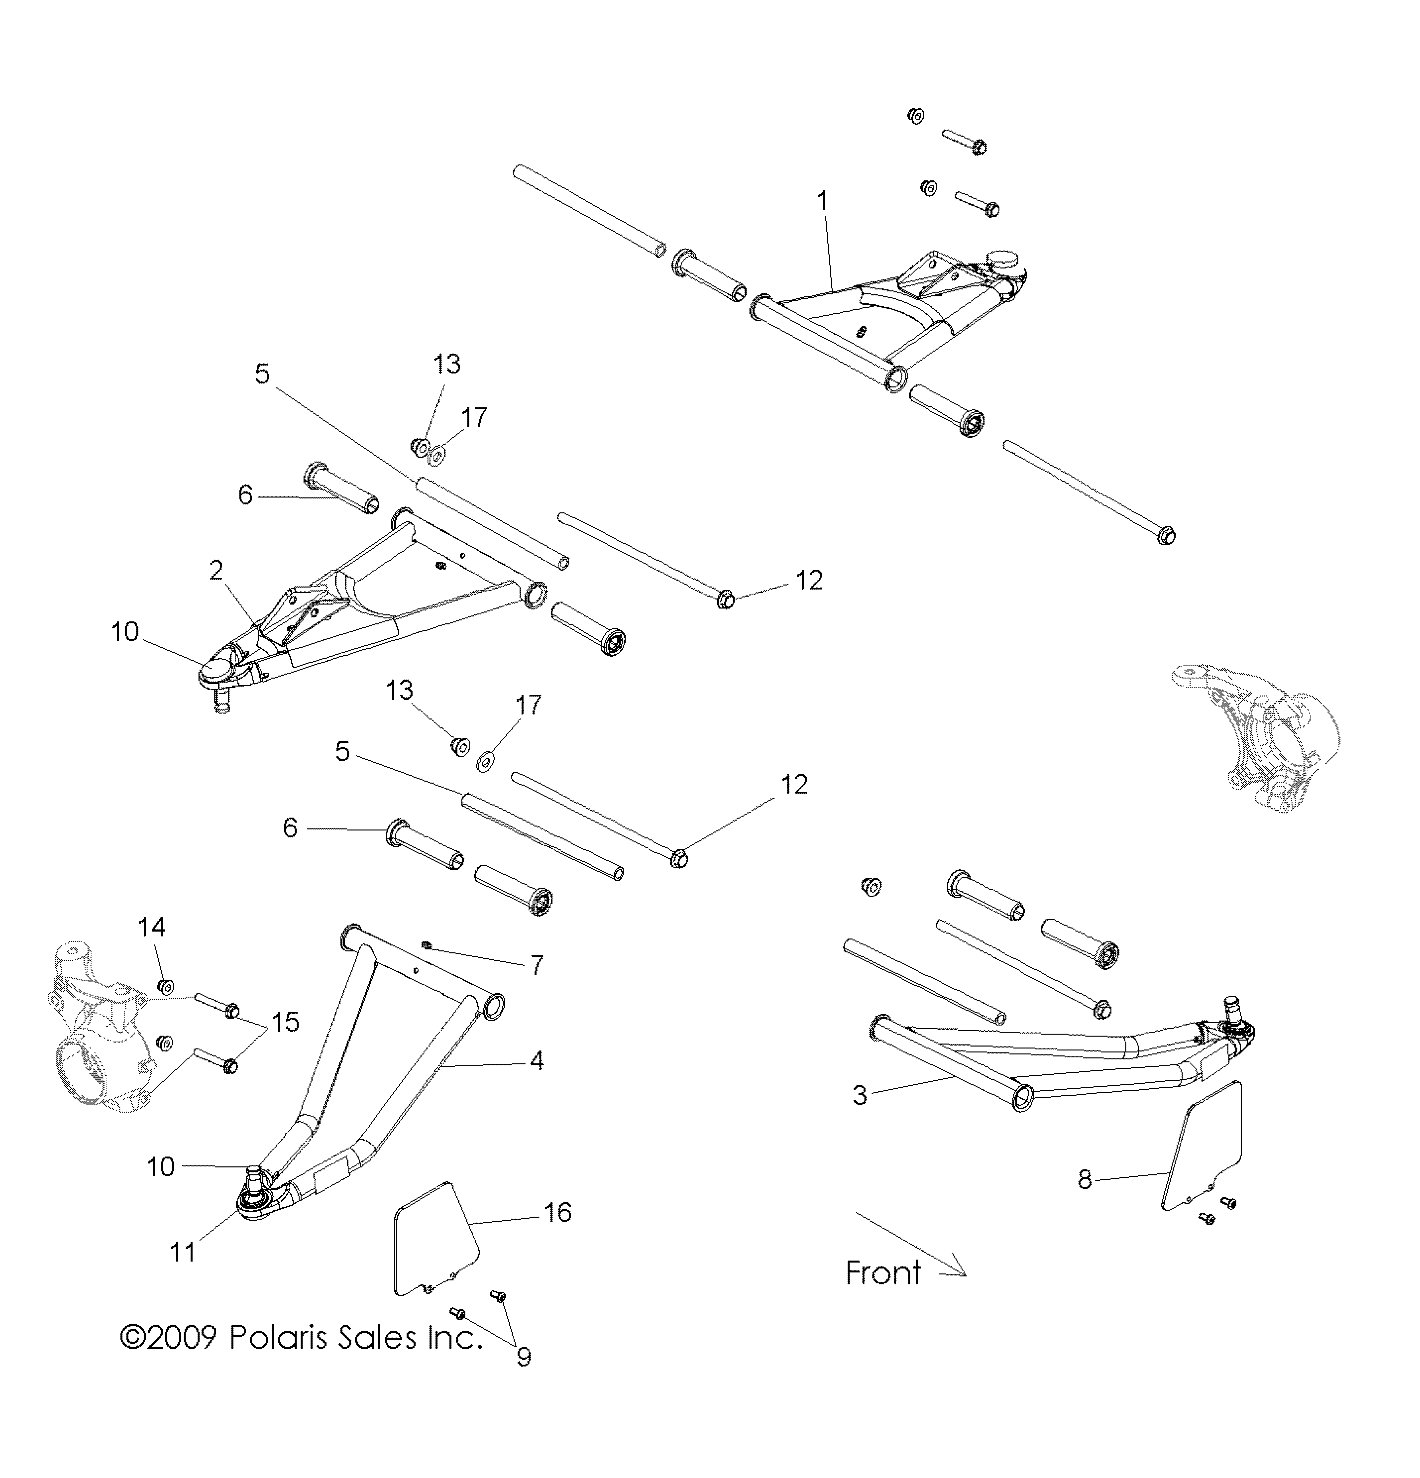 Foto diagrama Polaris que contem a peça 1015456-458